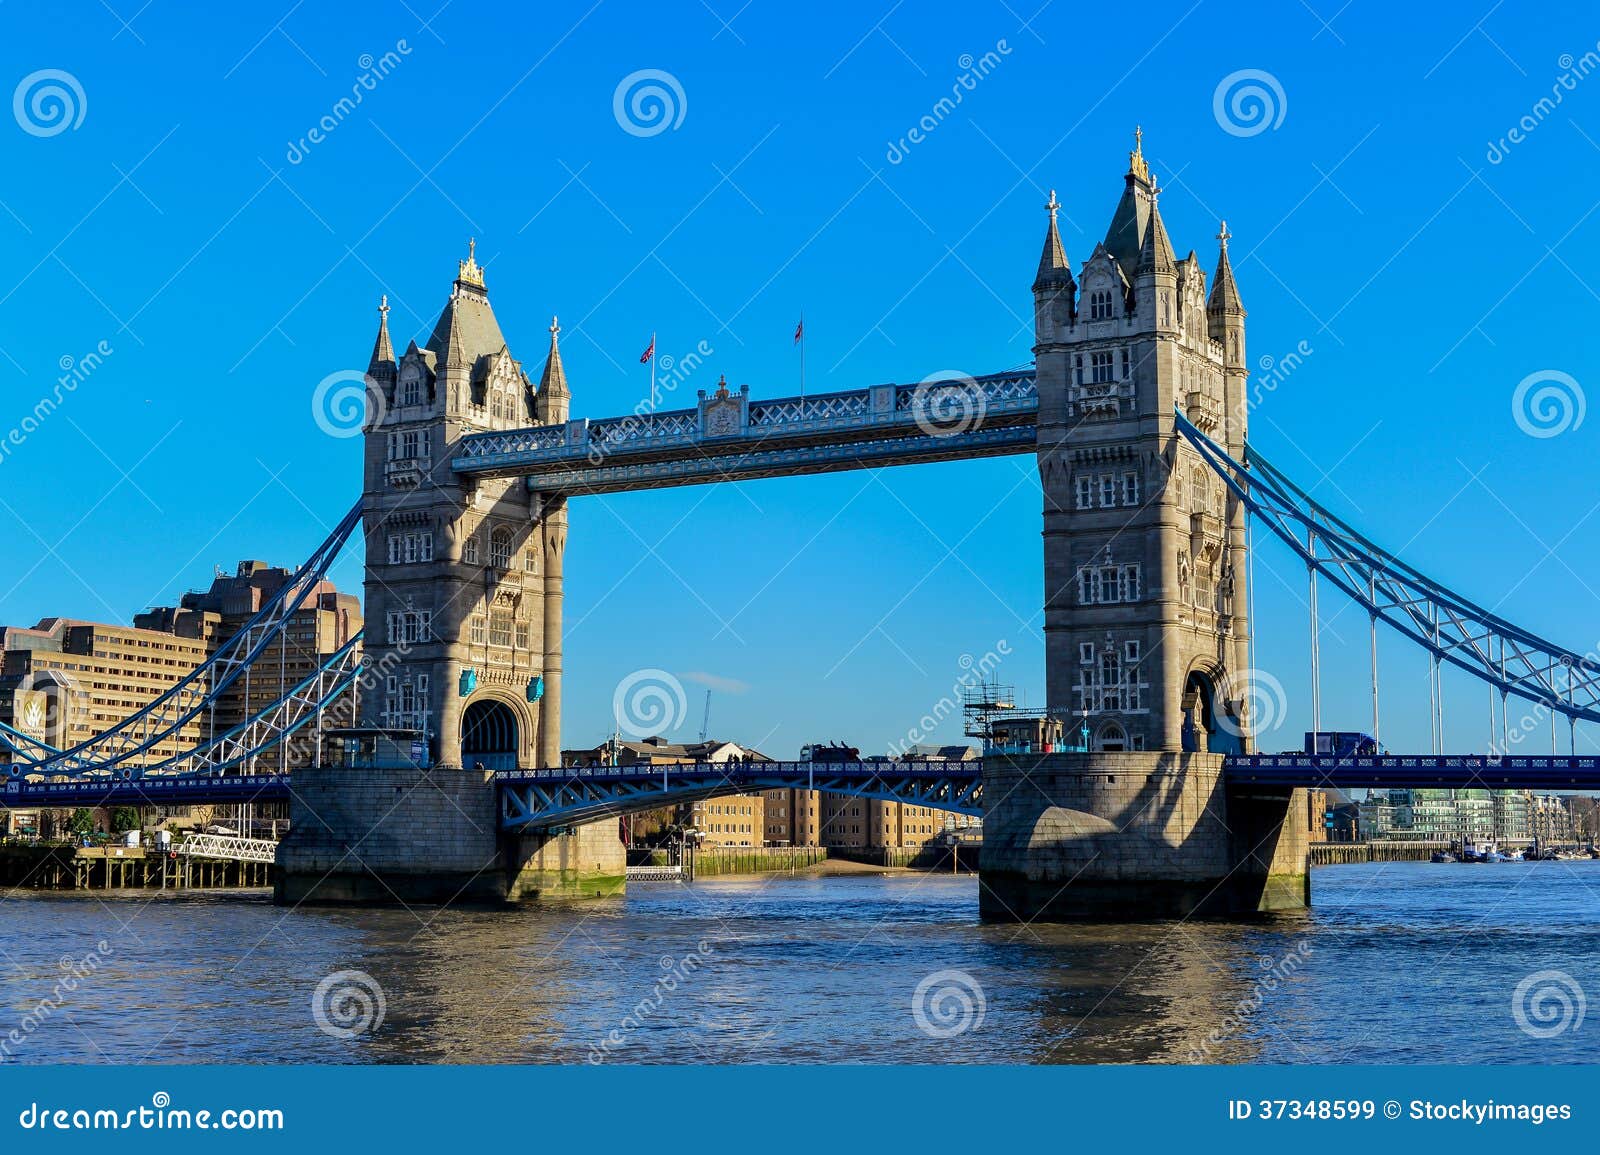 tower bridge in london crosses river thames